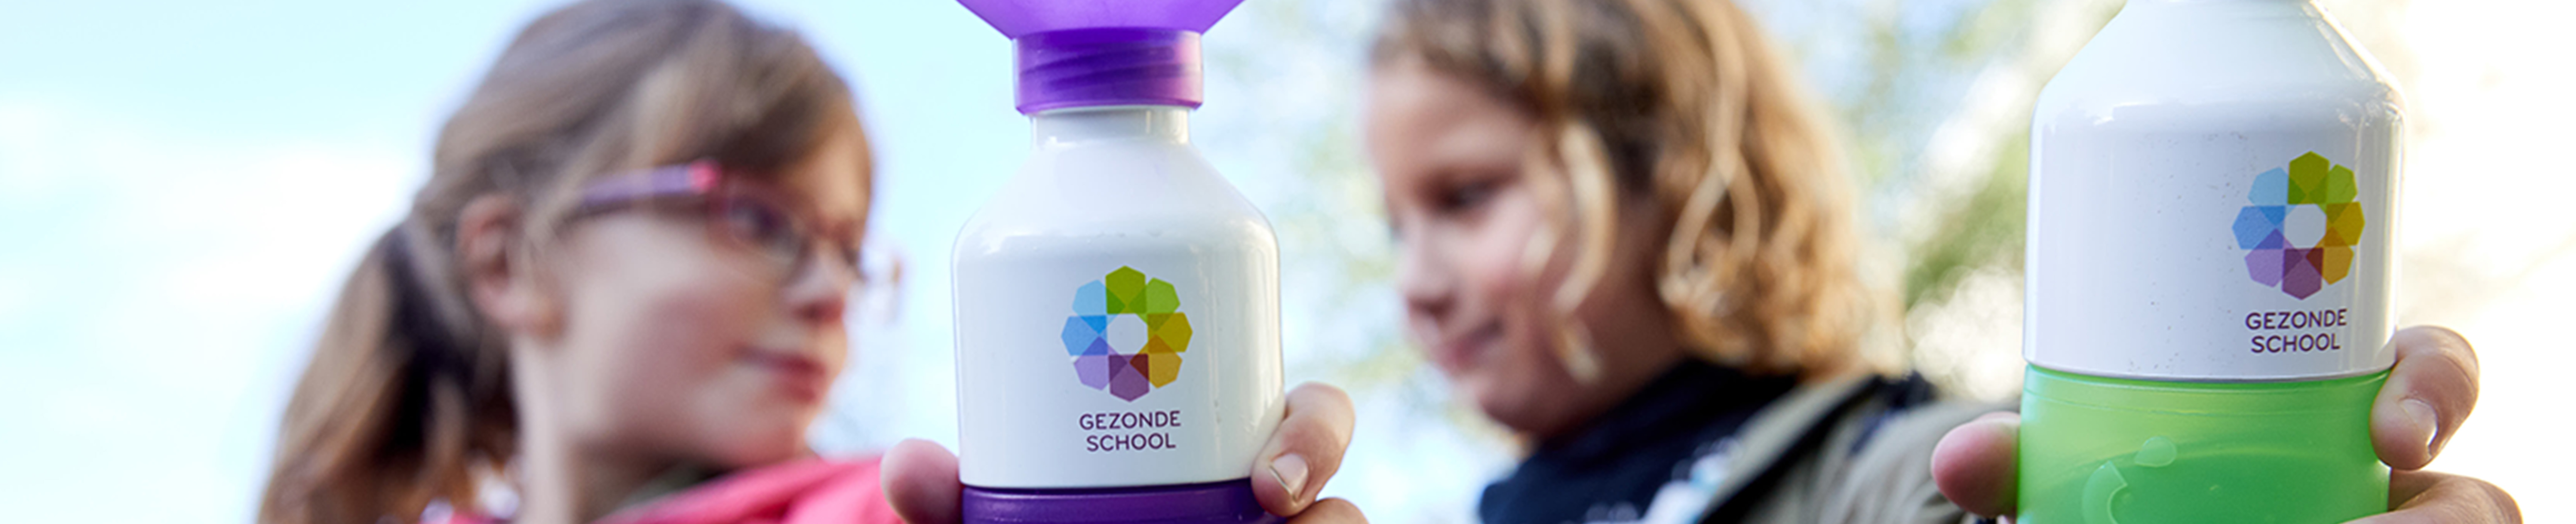 Decoratieve foto van twee leerlingen. Beide leerlingen hebben een waterflesje met daarop het logo van Gezonde School vast.